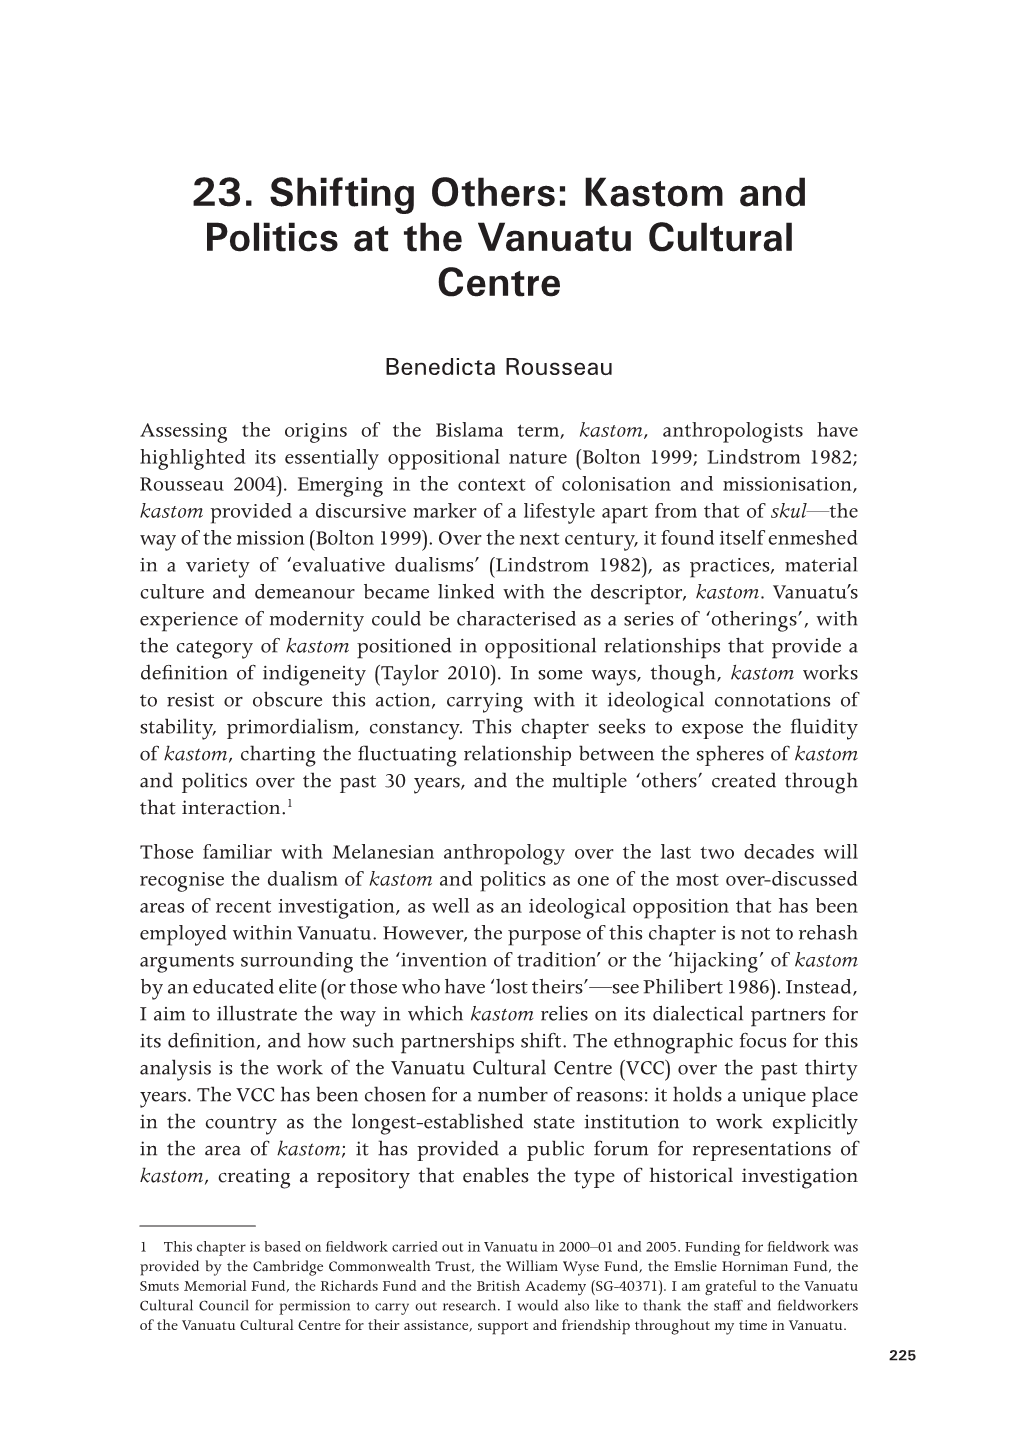 Kastom and Politics at the Vanuatu Cultural Centre